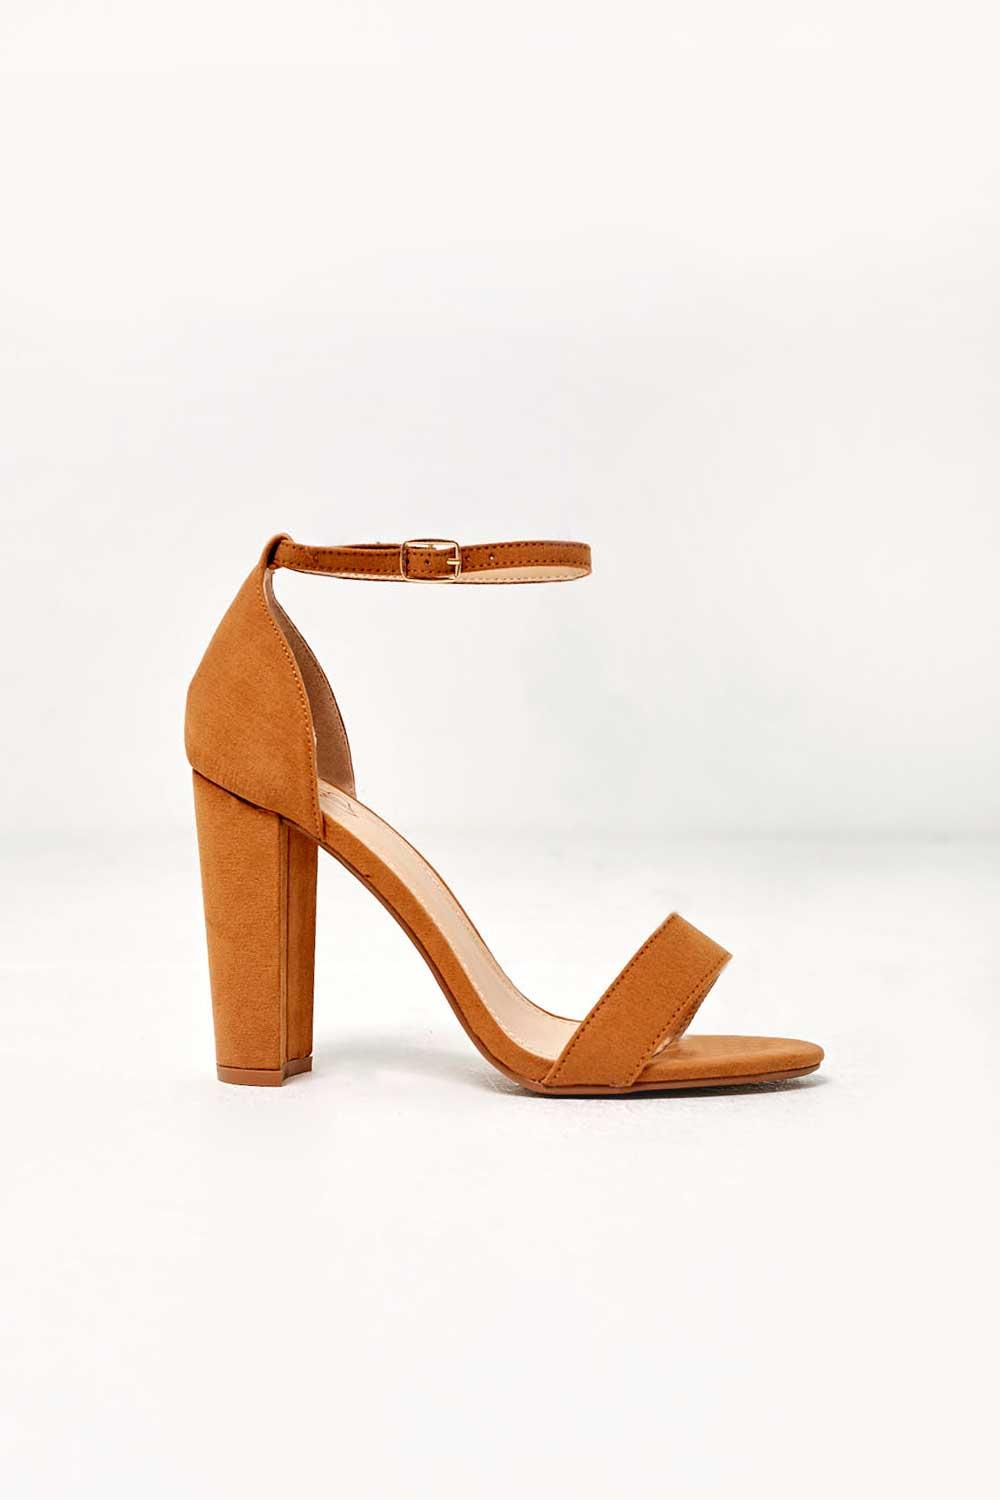 Falling In Love Camel Brown Heels | Brown heels, Heels, Chunky heels